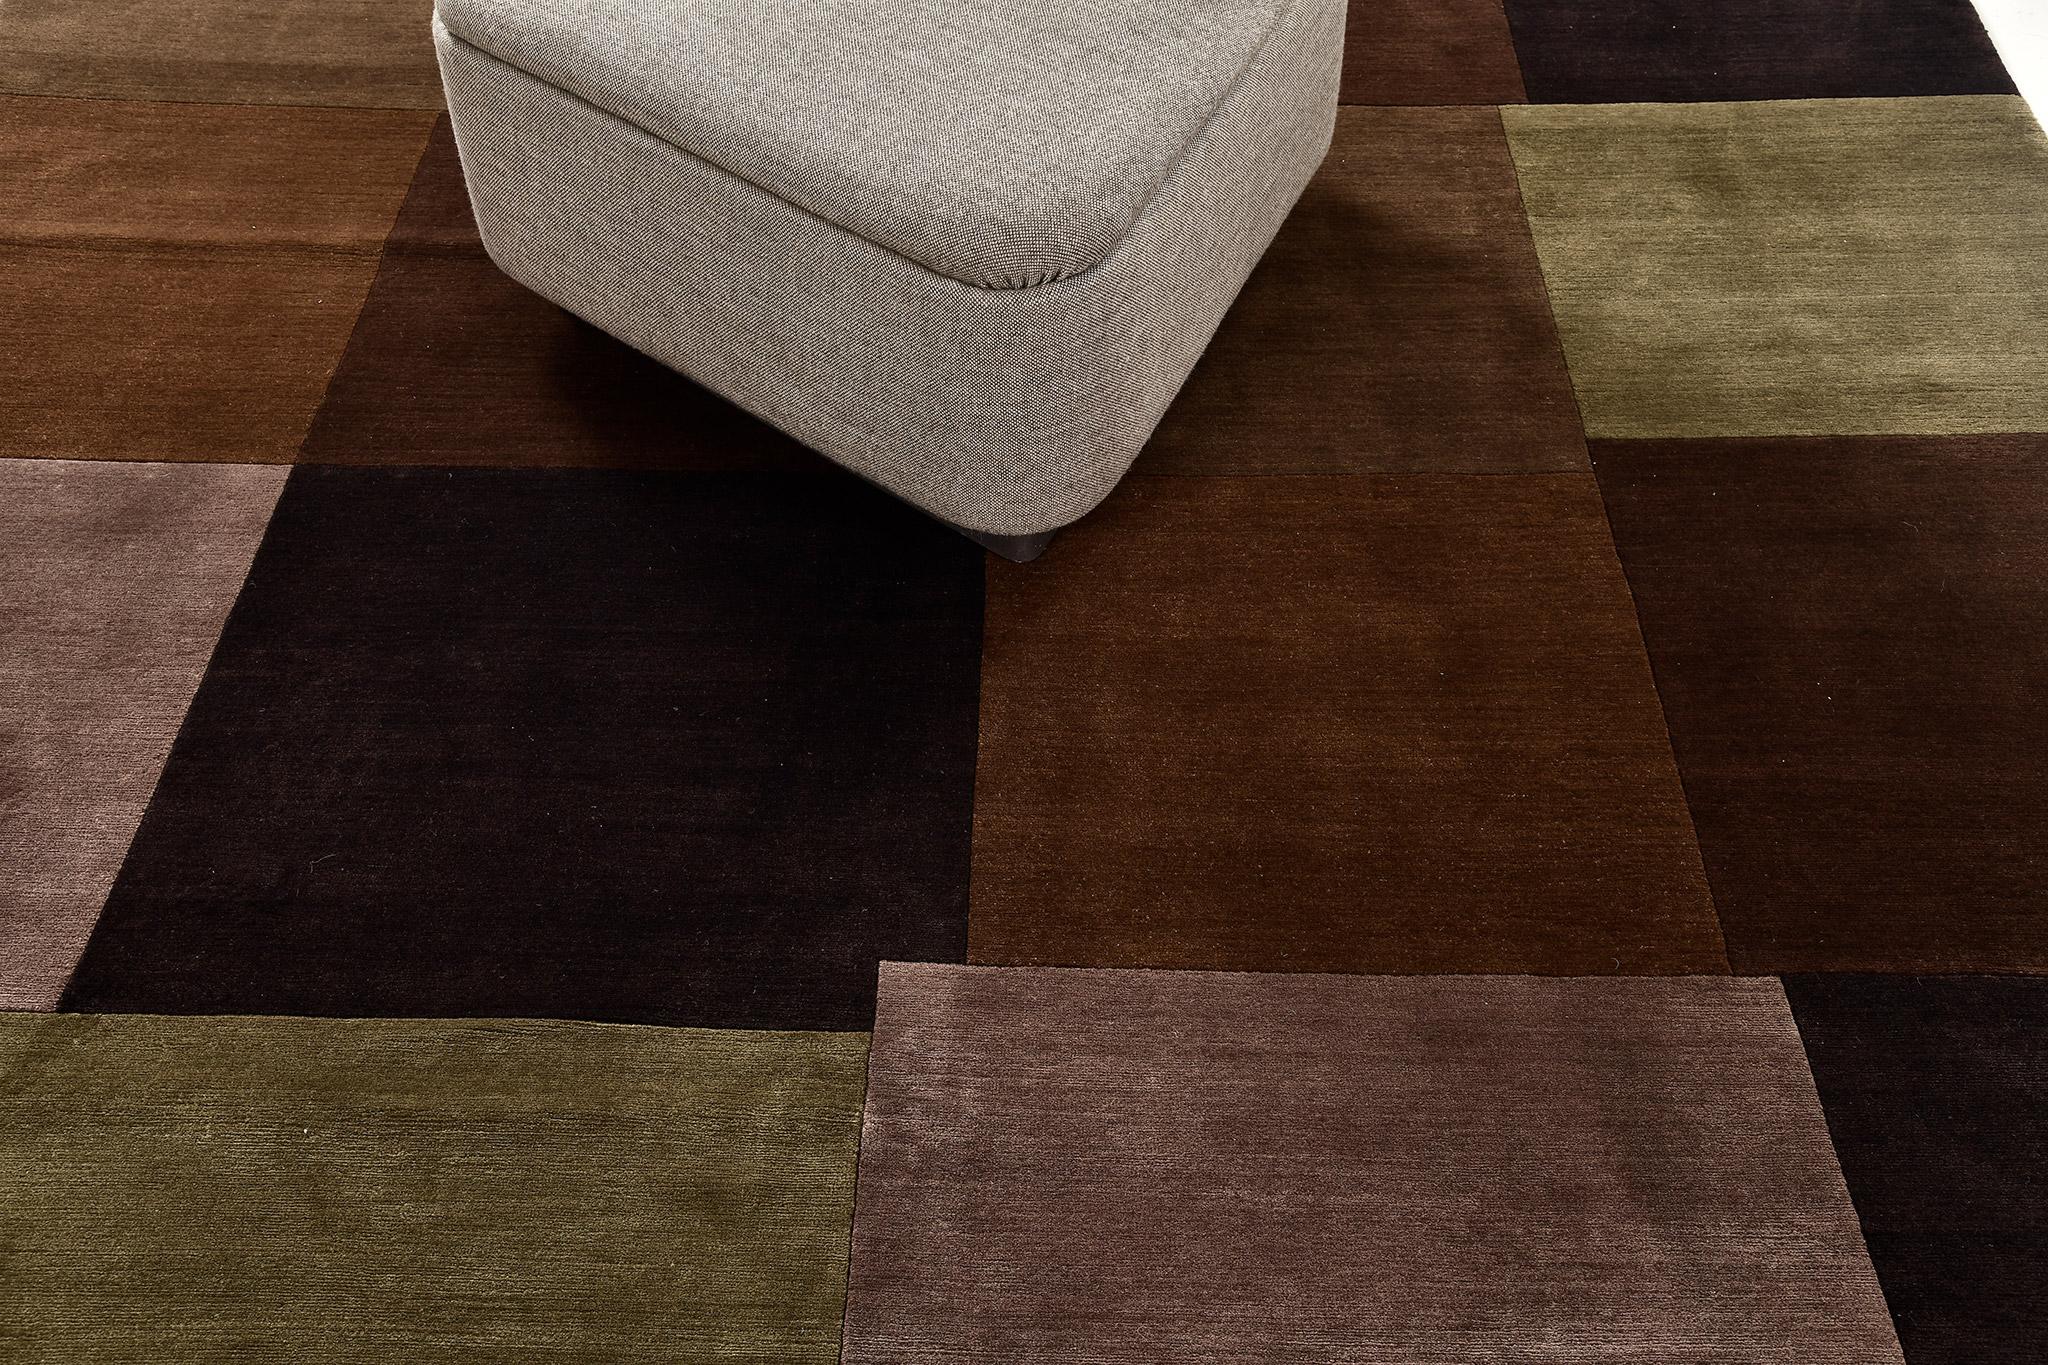 Dieser elegante Mondrian-Teppich hat viele dunkle Farbtöne, die an die Barockzeit erinnern. Dieser Teppich ist ein traditionelles Stück in Raumgröße, das sich ideal für den Boden oder die Wand eignet. Ein Tafelaufsatz, der das Innere Ihres Hauses